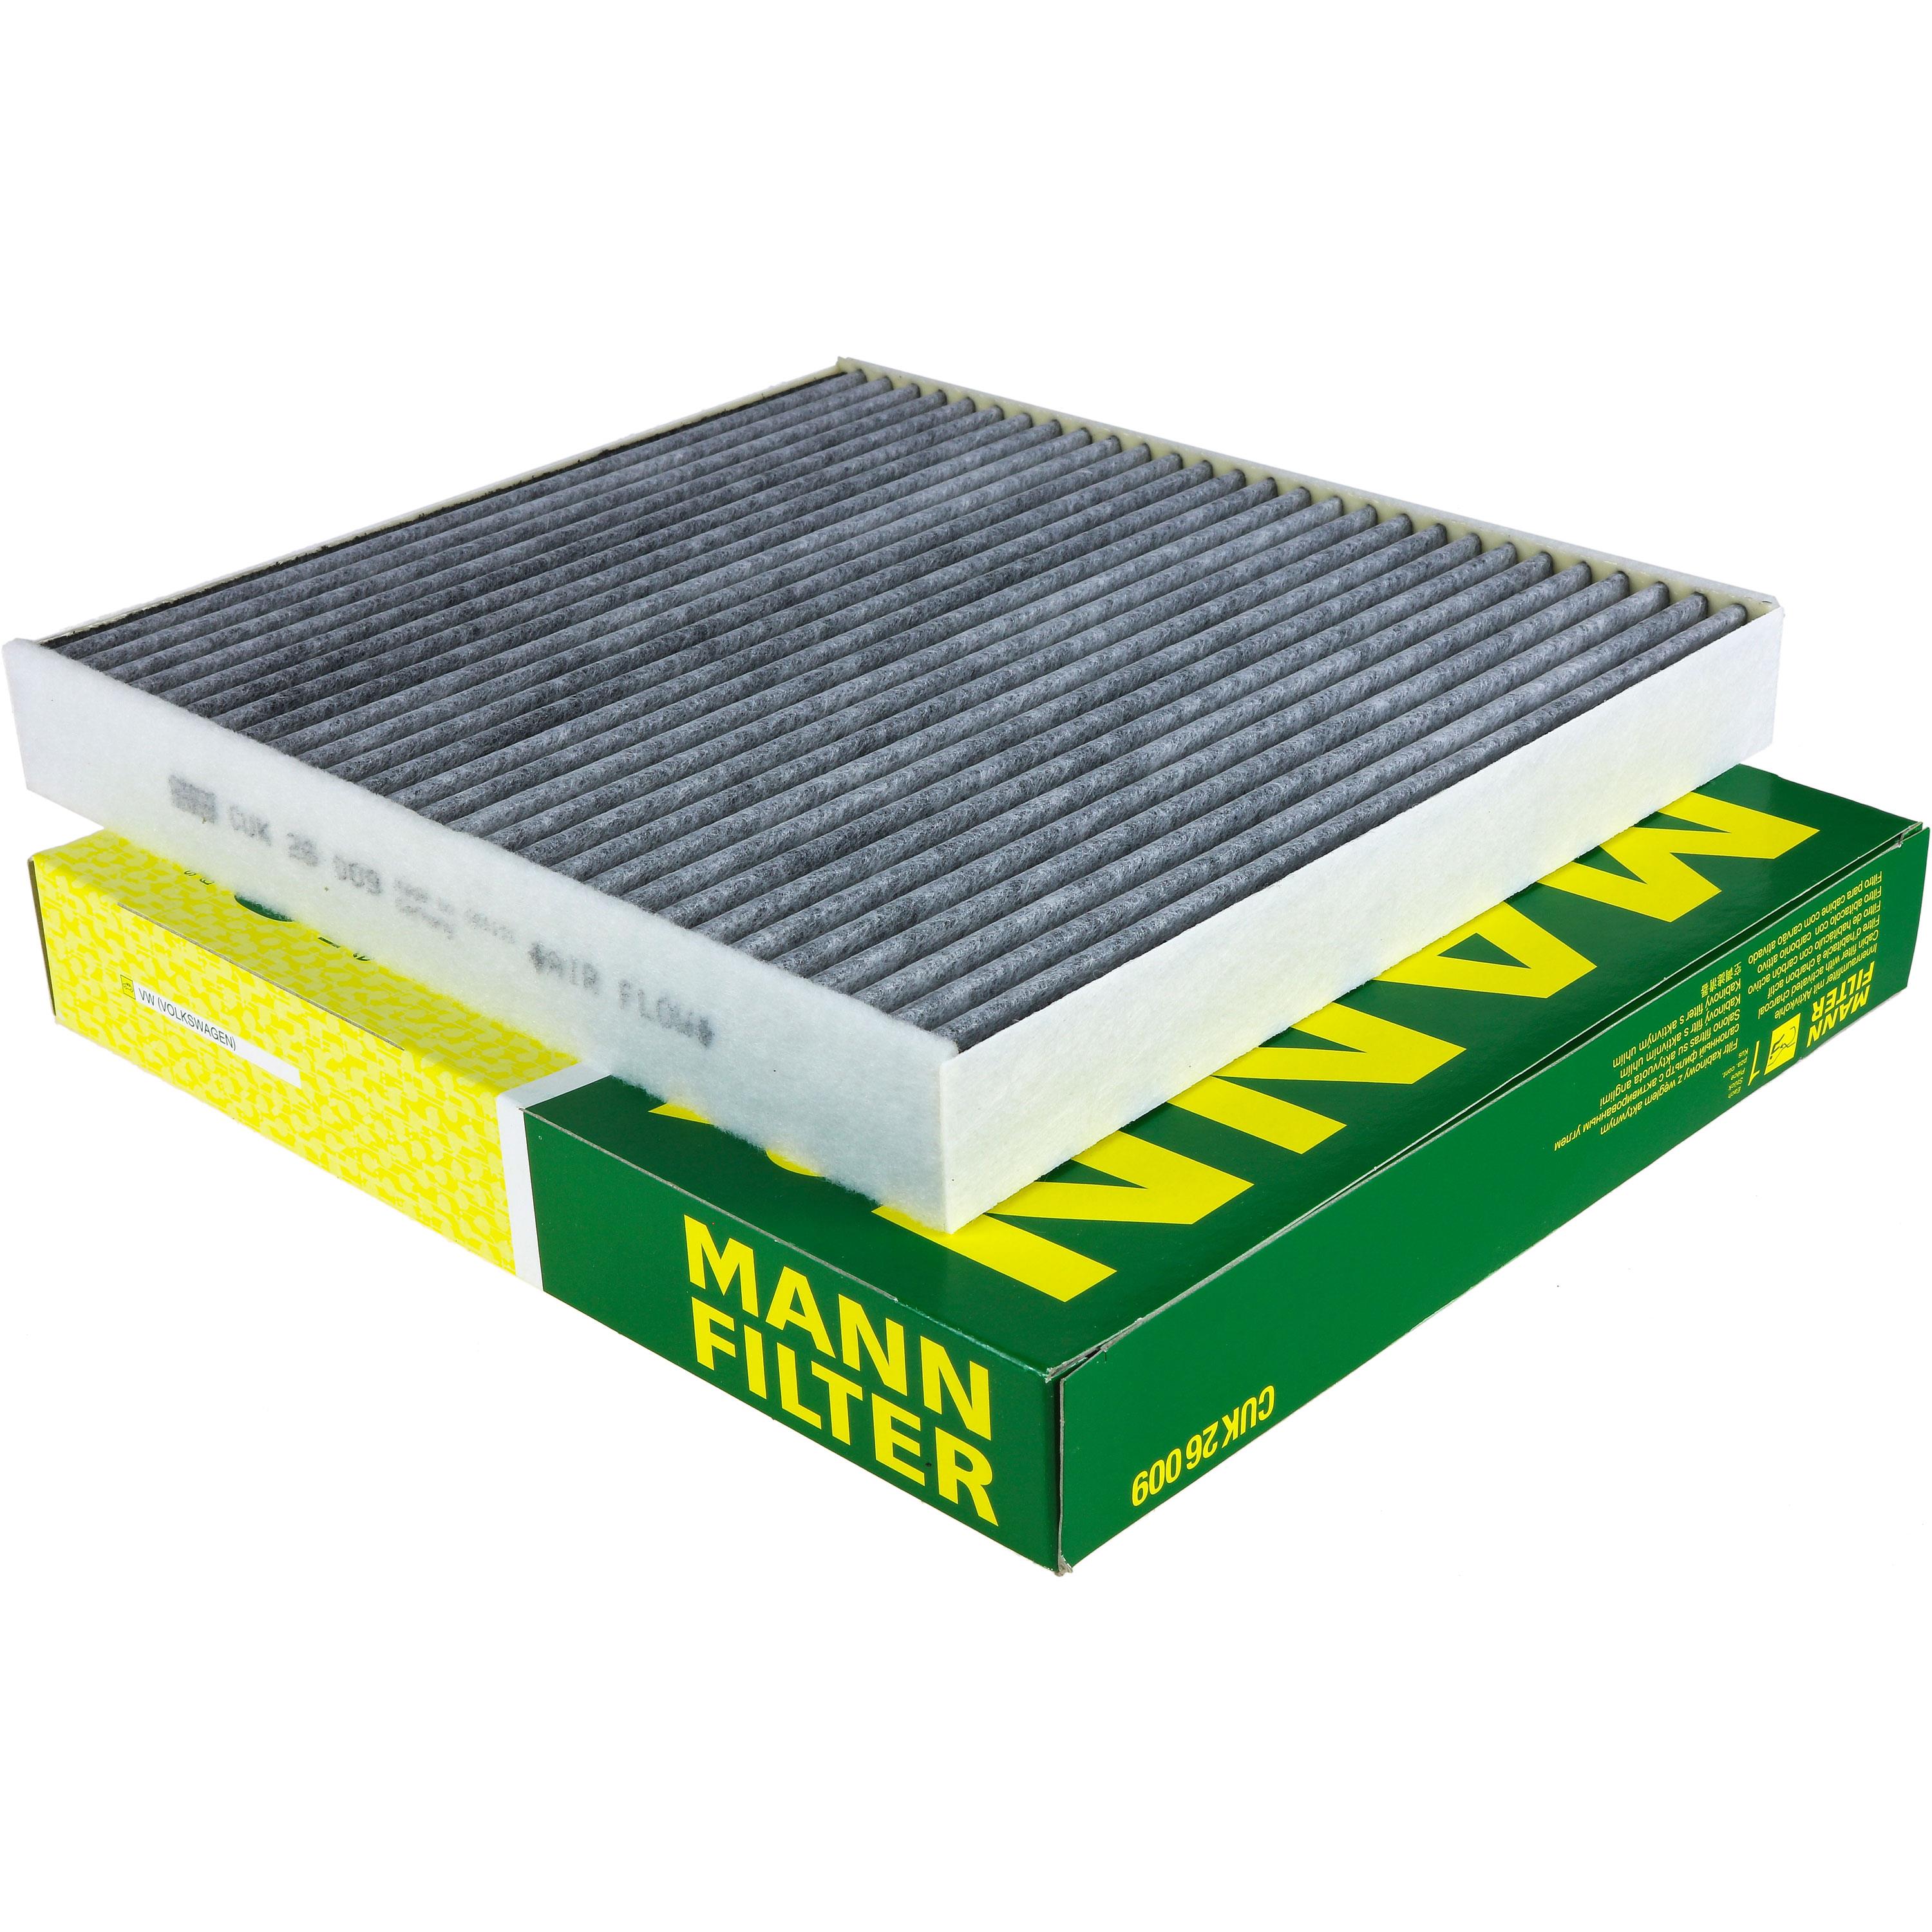 MANN-FILTER Innenraumfilter Pollenfilter Aktivkohle CUK 26 009